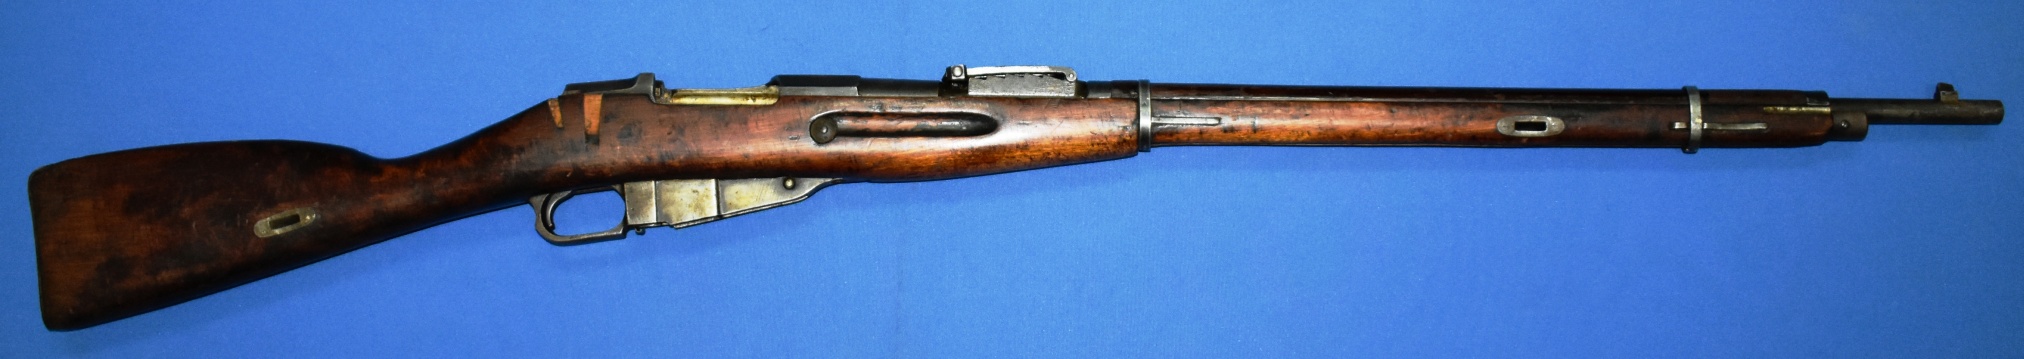 7.62-мм винтовка образца 1891 года (драгунская). Ижевский оружейный завод. 1914 год.